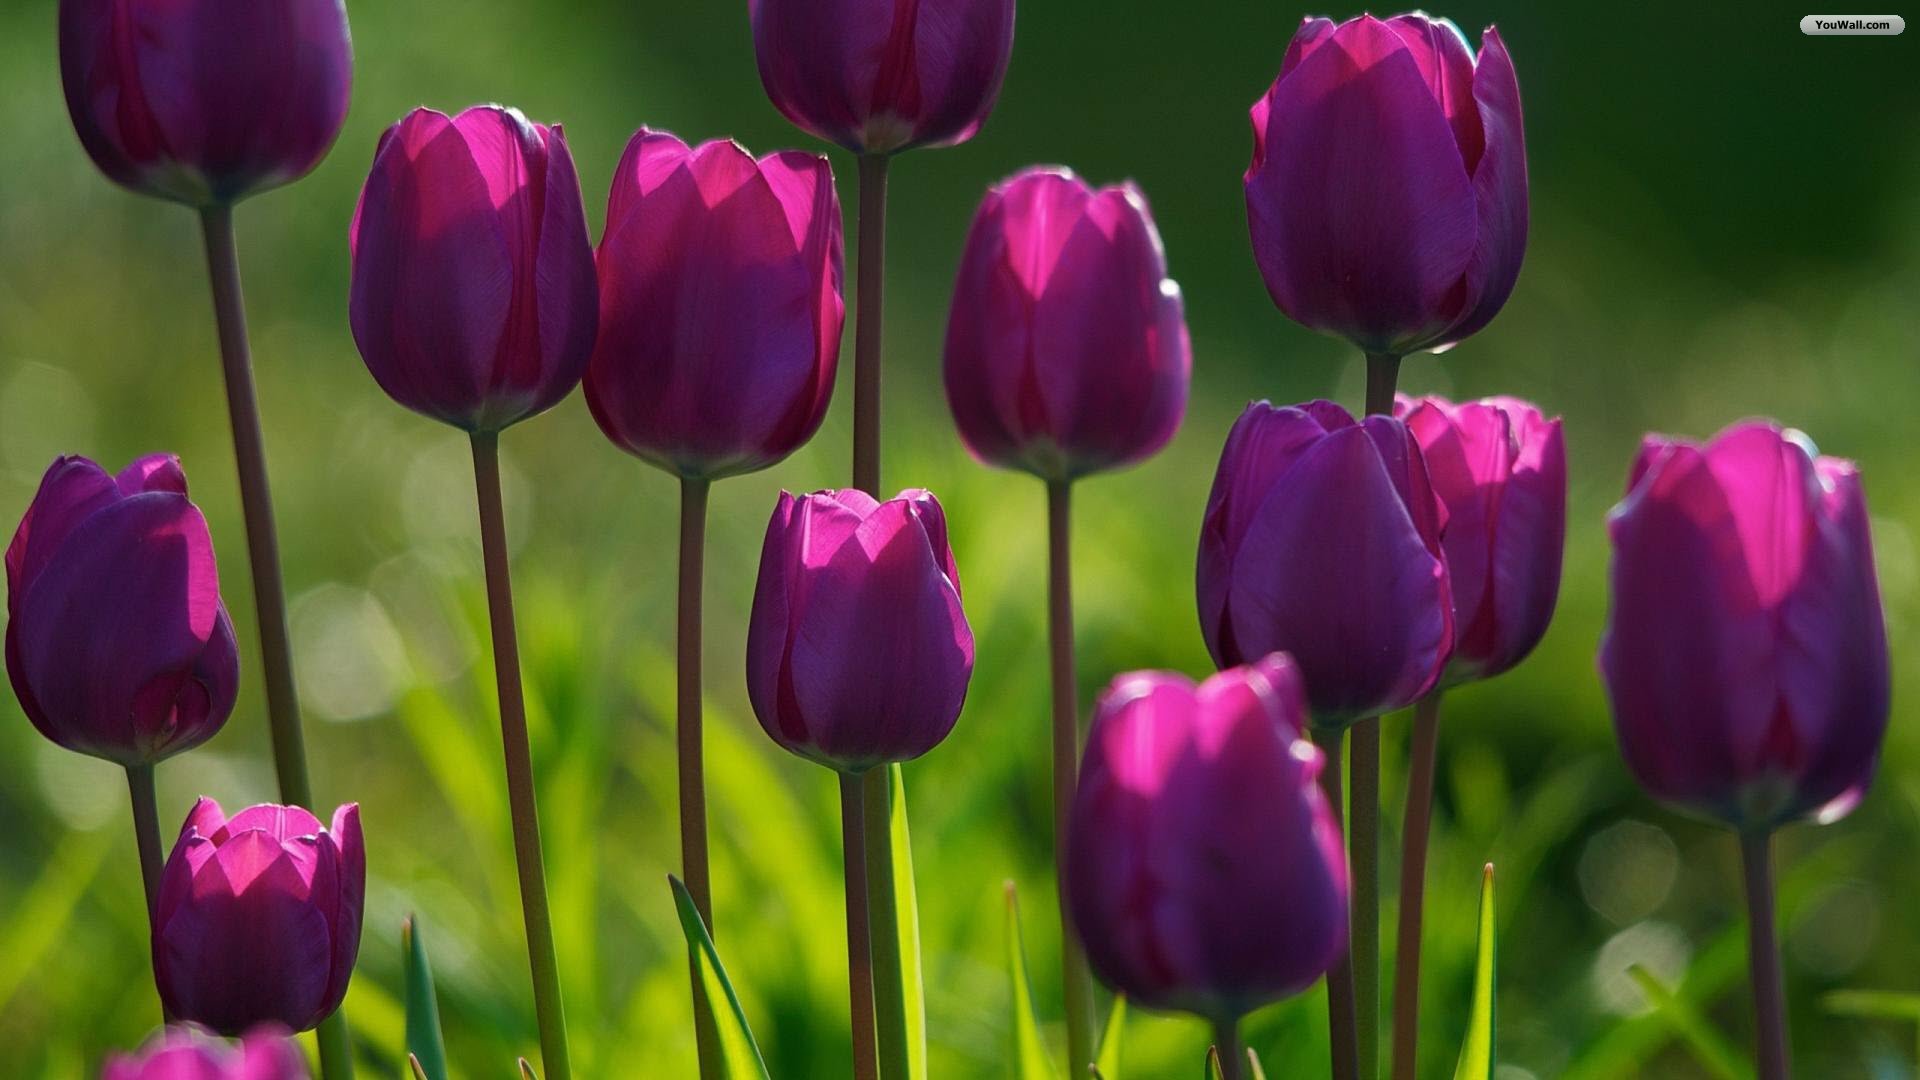 YouWall - Purple Tulips Wallpaper - wallpaper,wallpapers,free ...